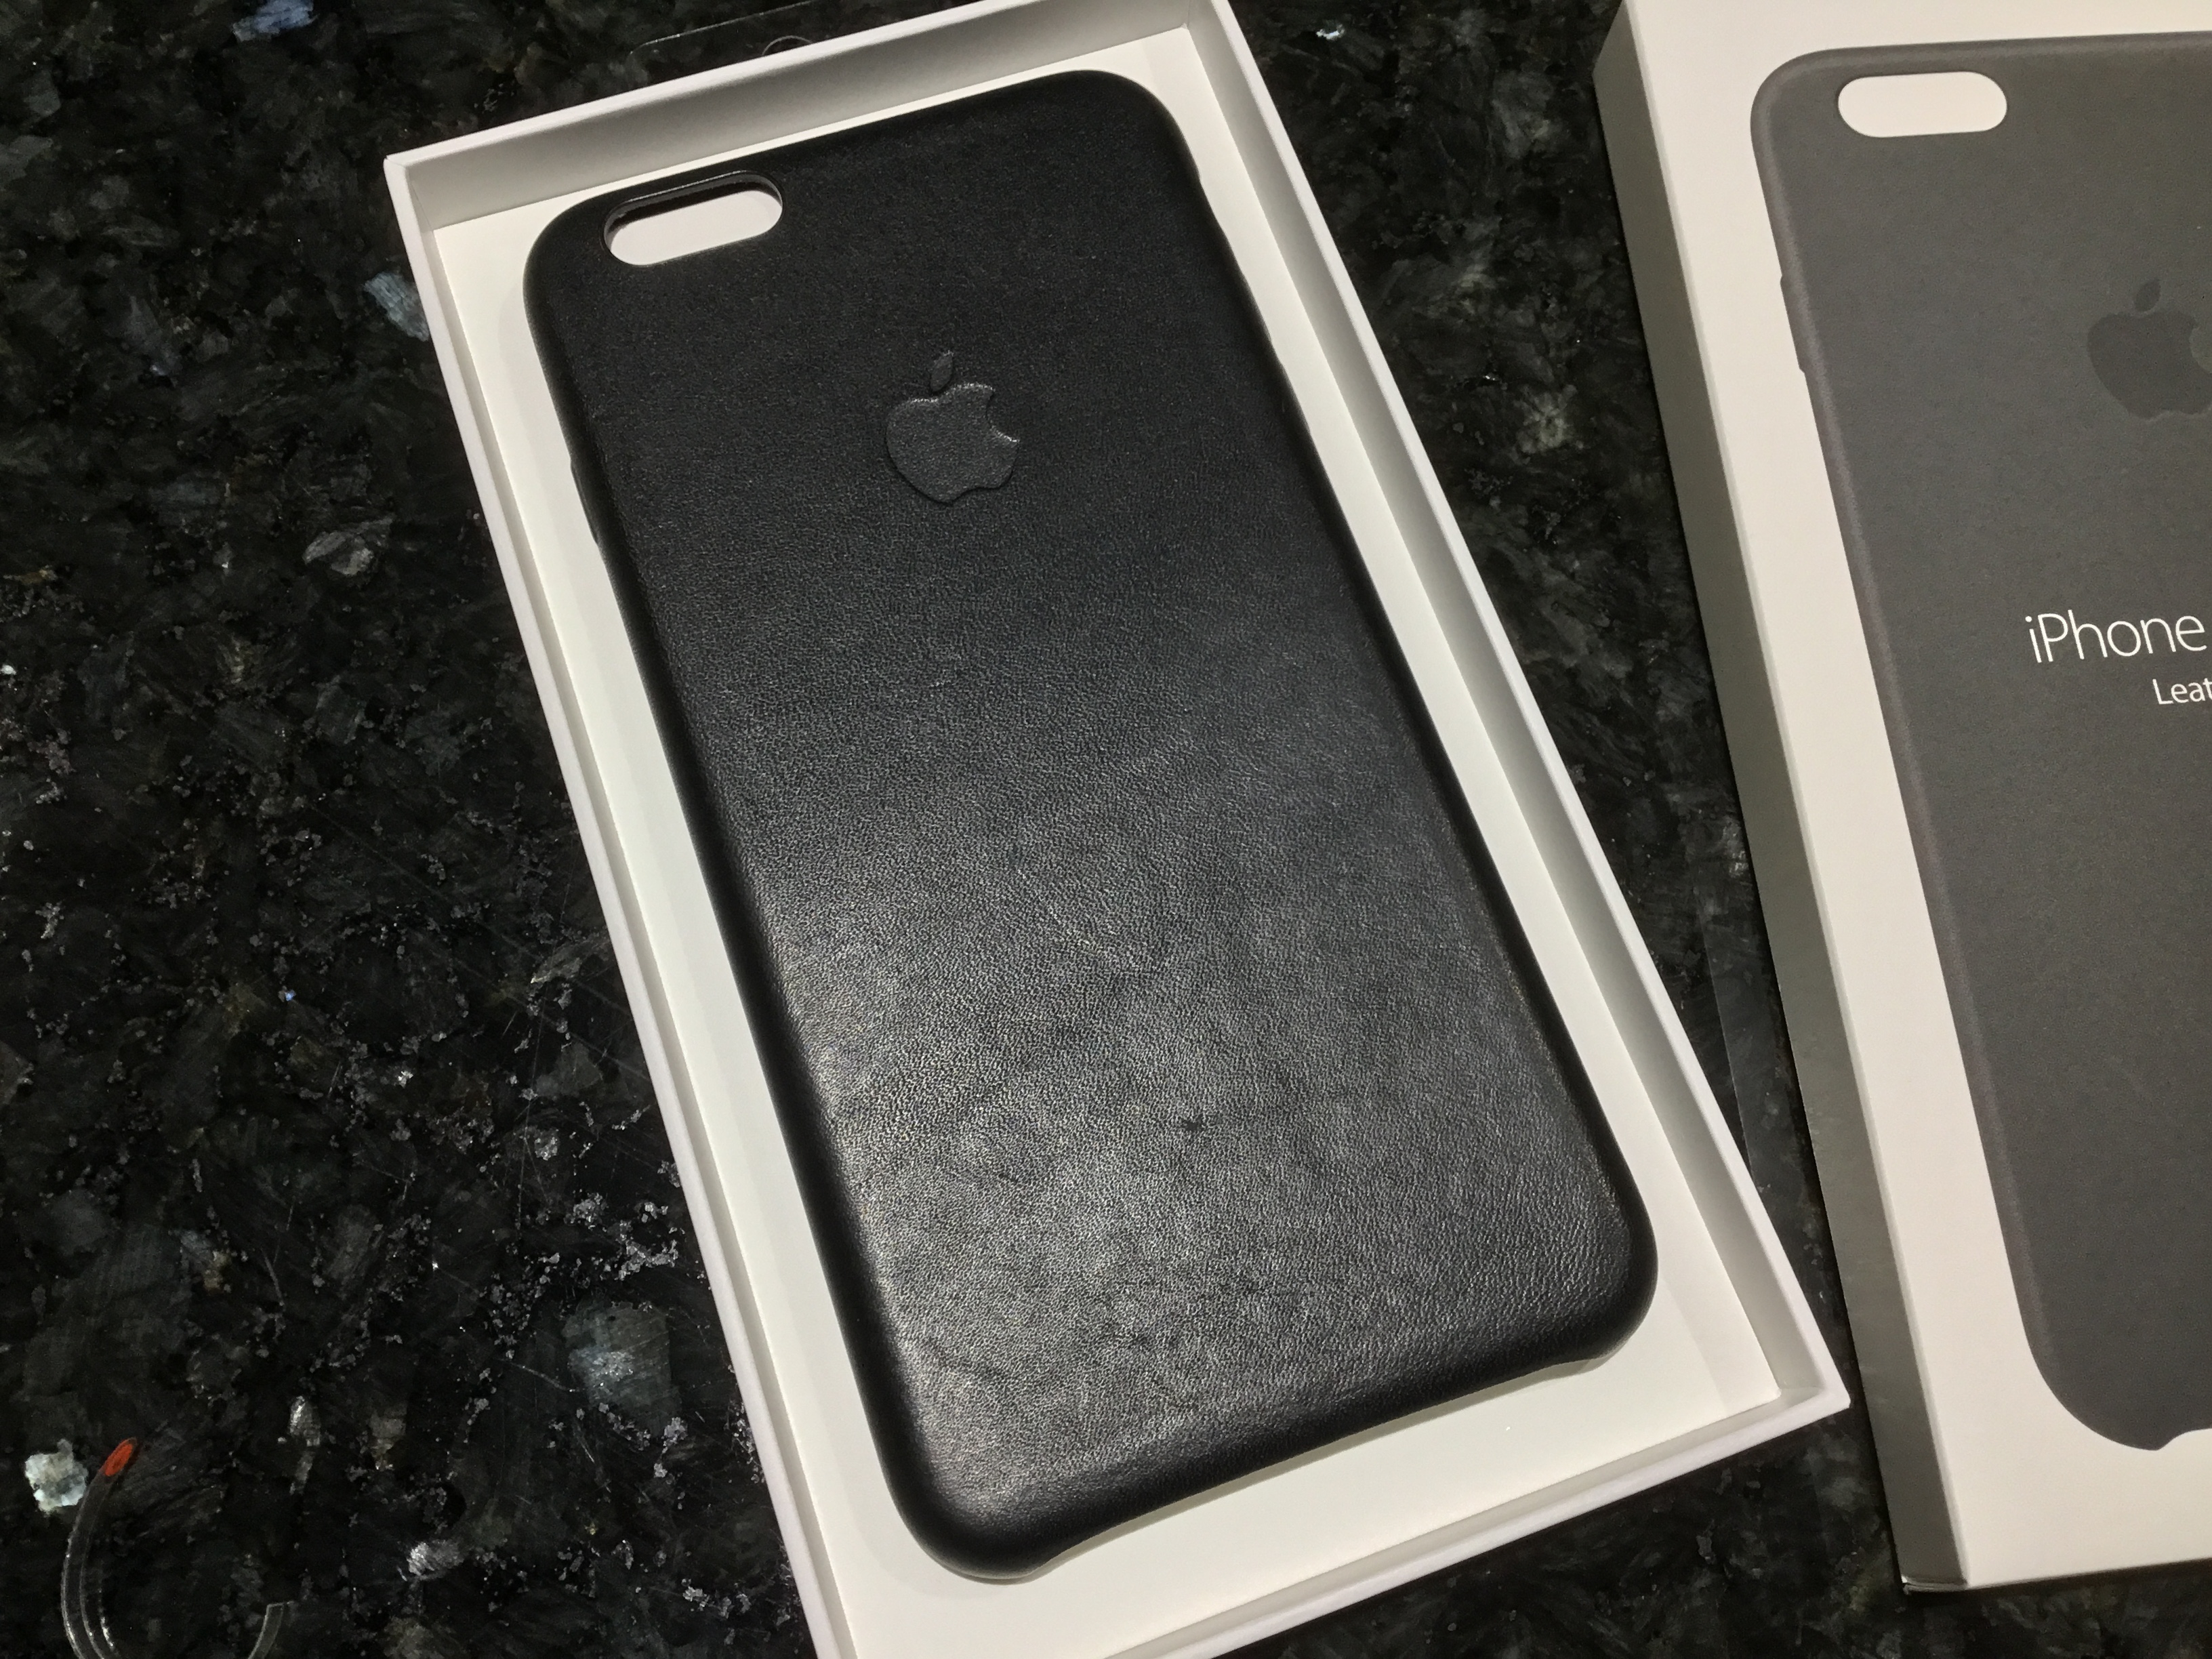 Genuine Apple Iphone 6S Plus Leather CASE - Black